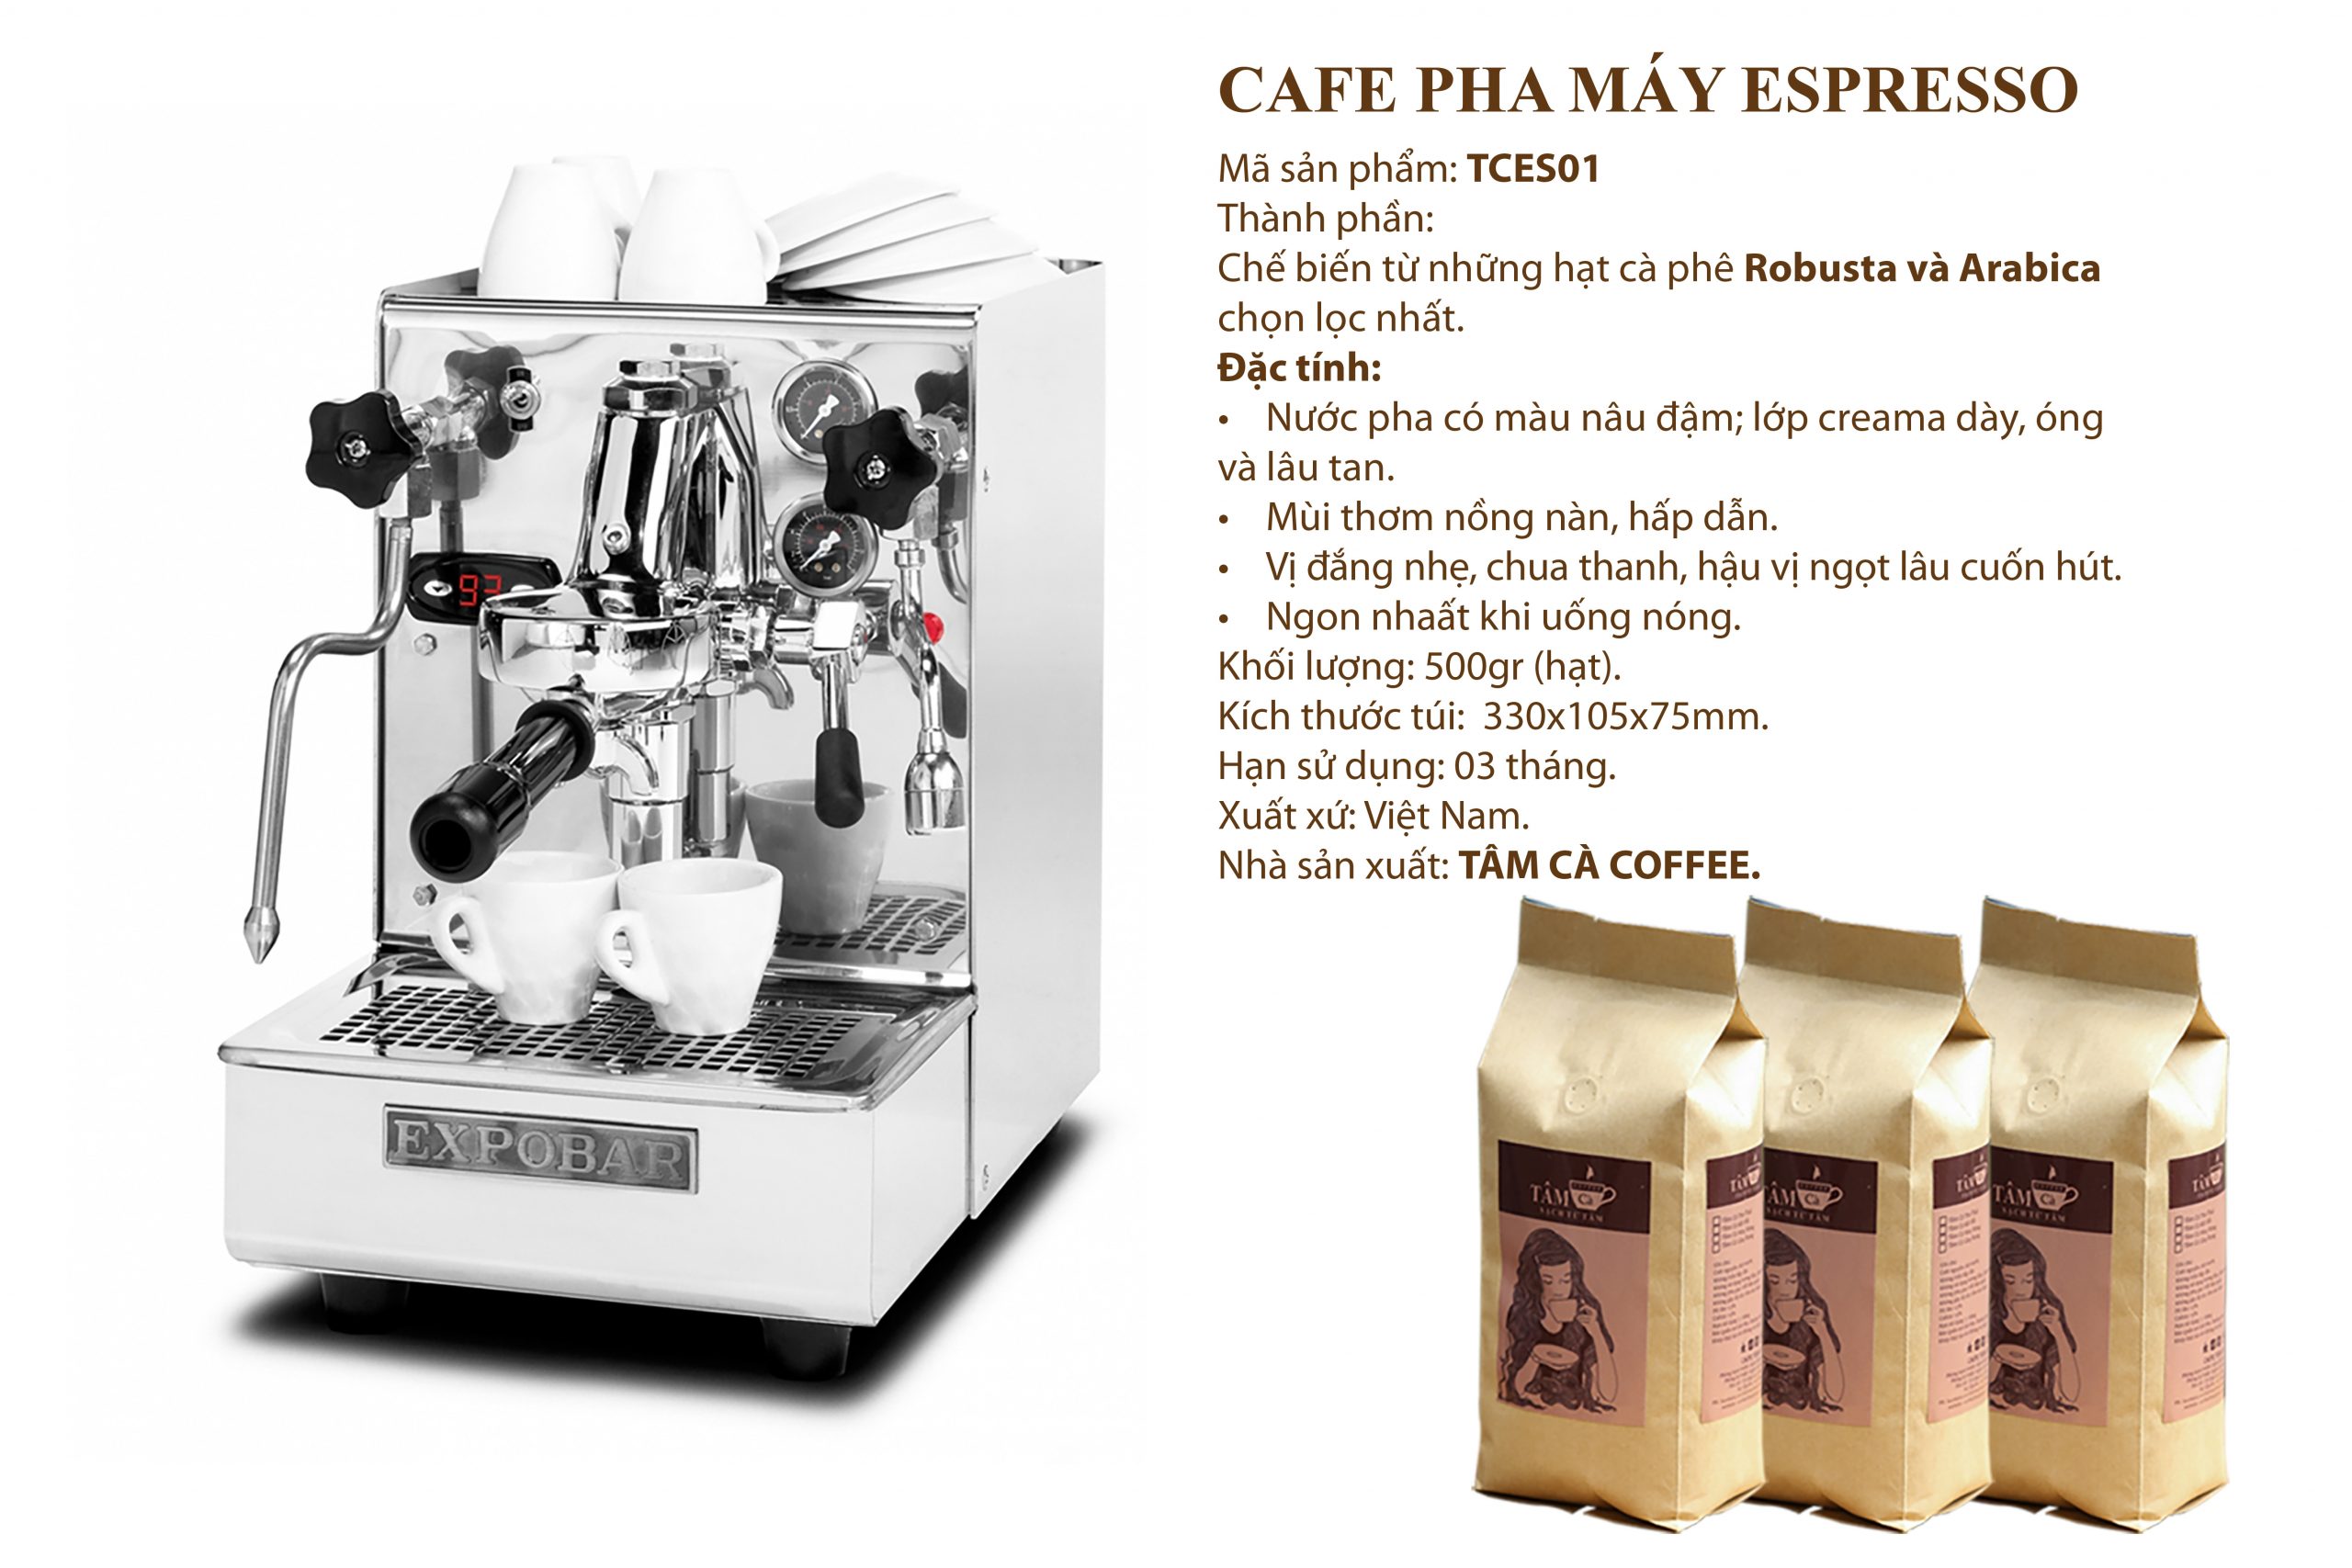 Tâm Cà Coffee ra mắt dòng cà phê rang xay đặc dụng